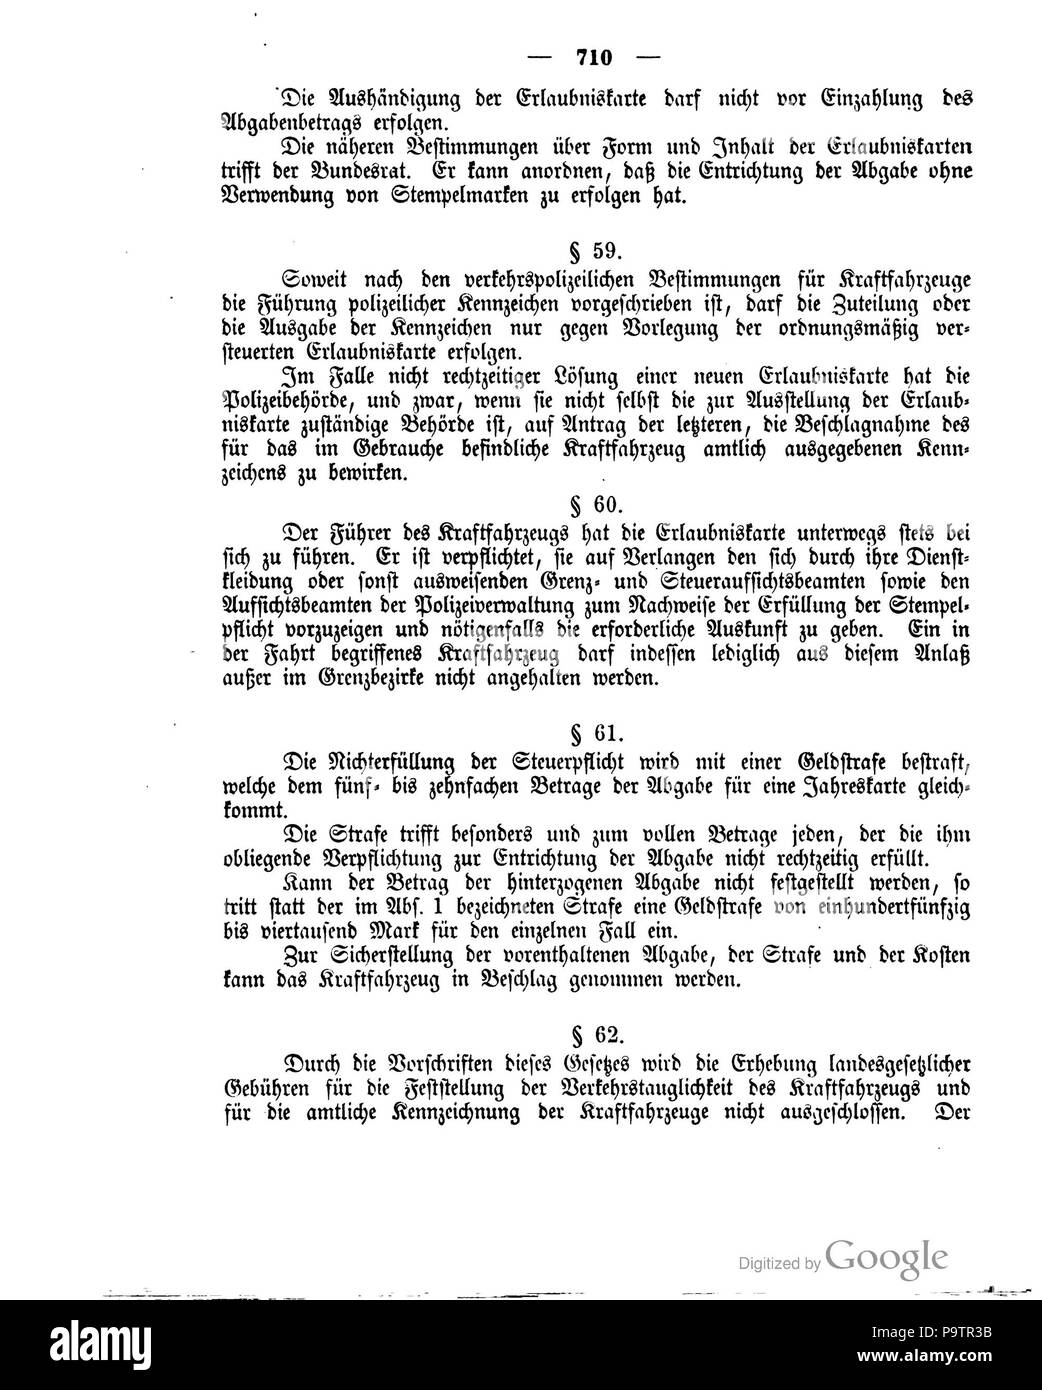 420 Deutsches Reichsgesetzblatt 1906 033 710 Stock Photo